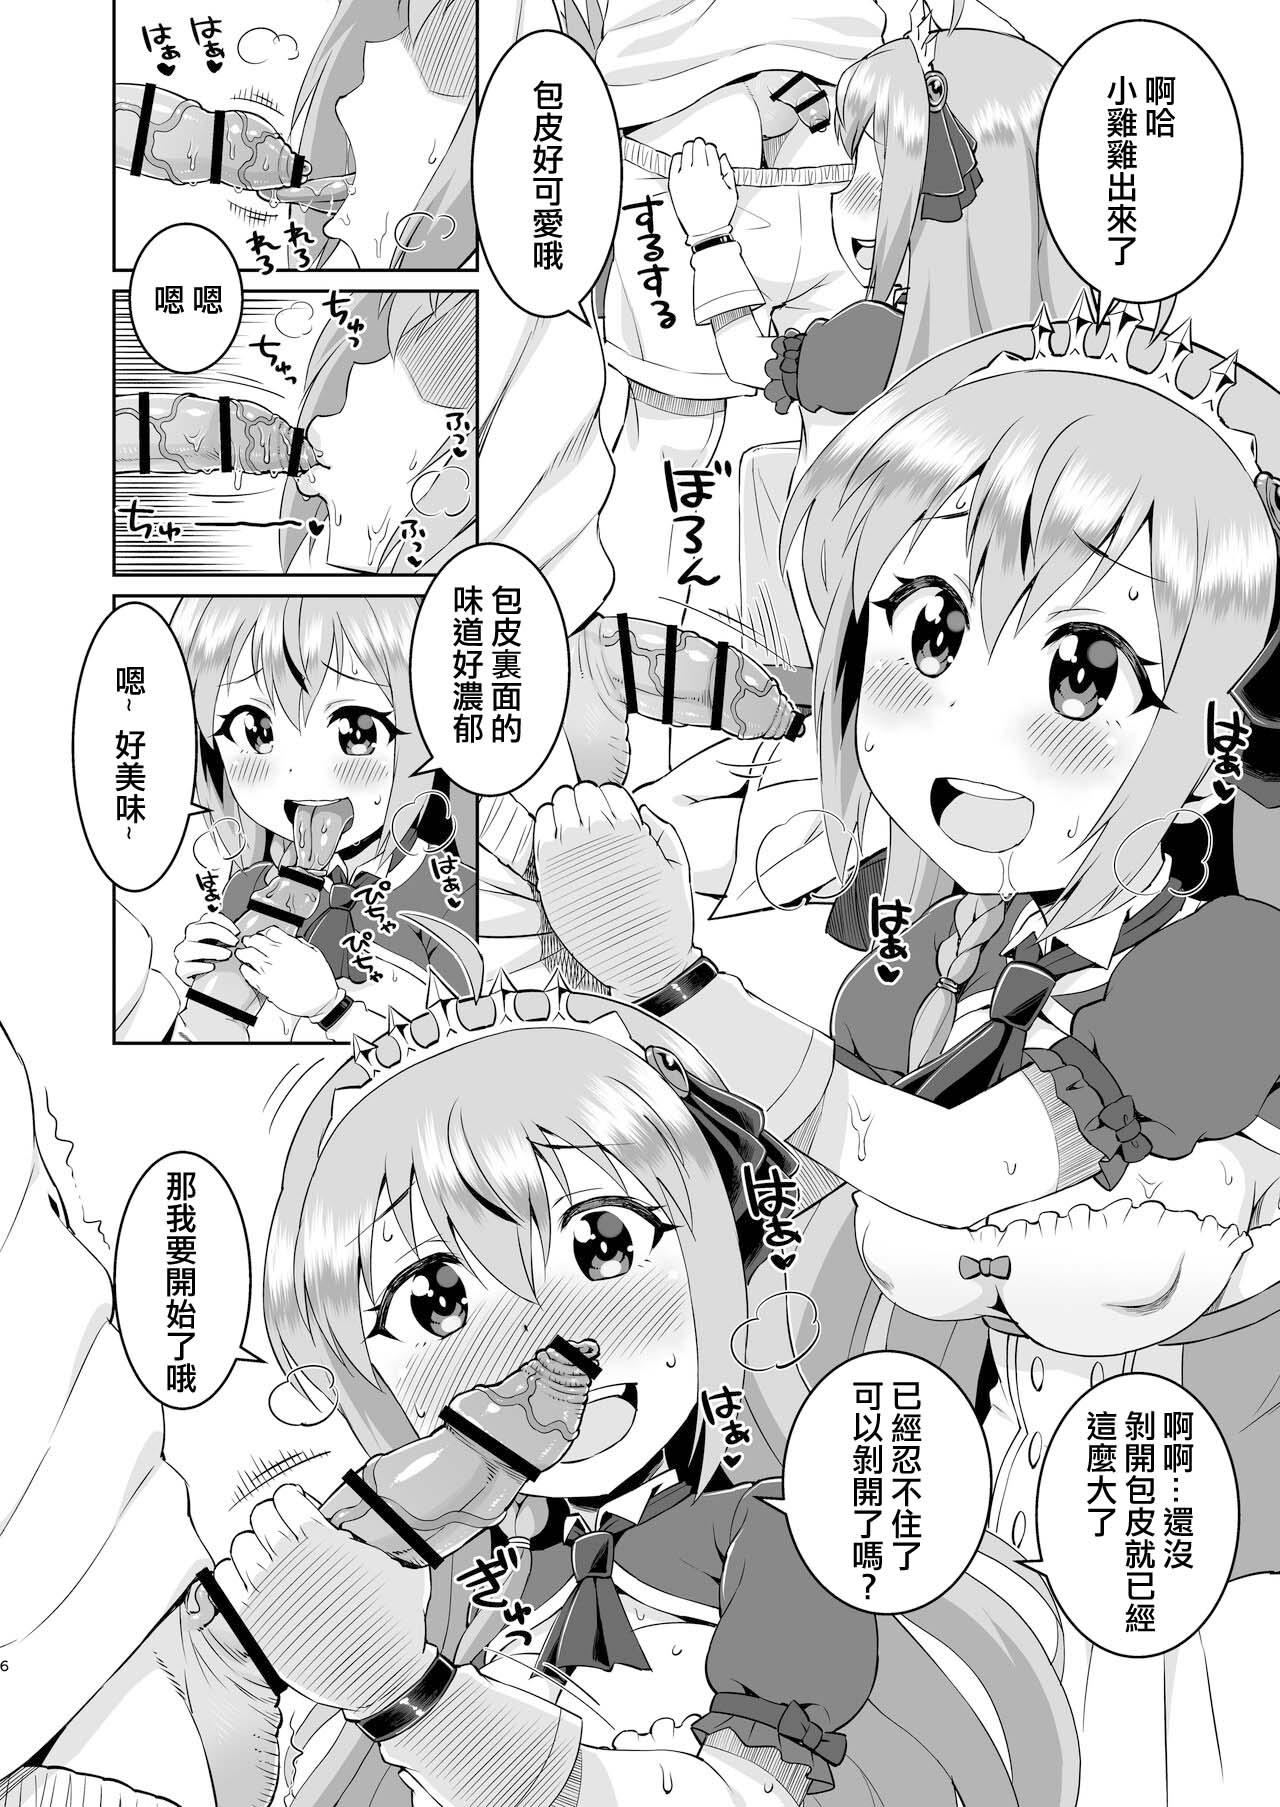 Big Peco-chan Meccha Kawaii yo ne - Princess connect Stretch - Page 5